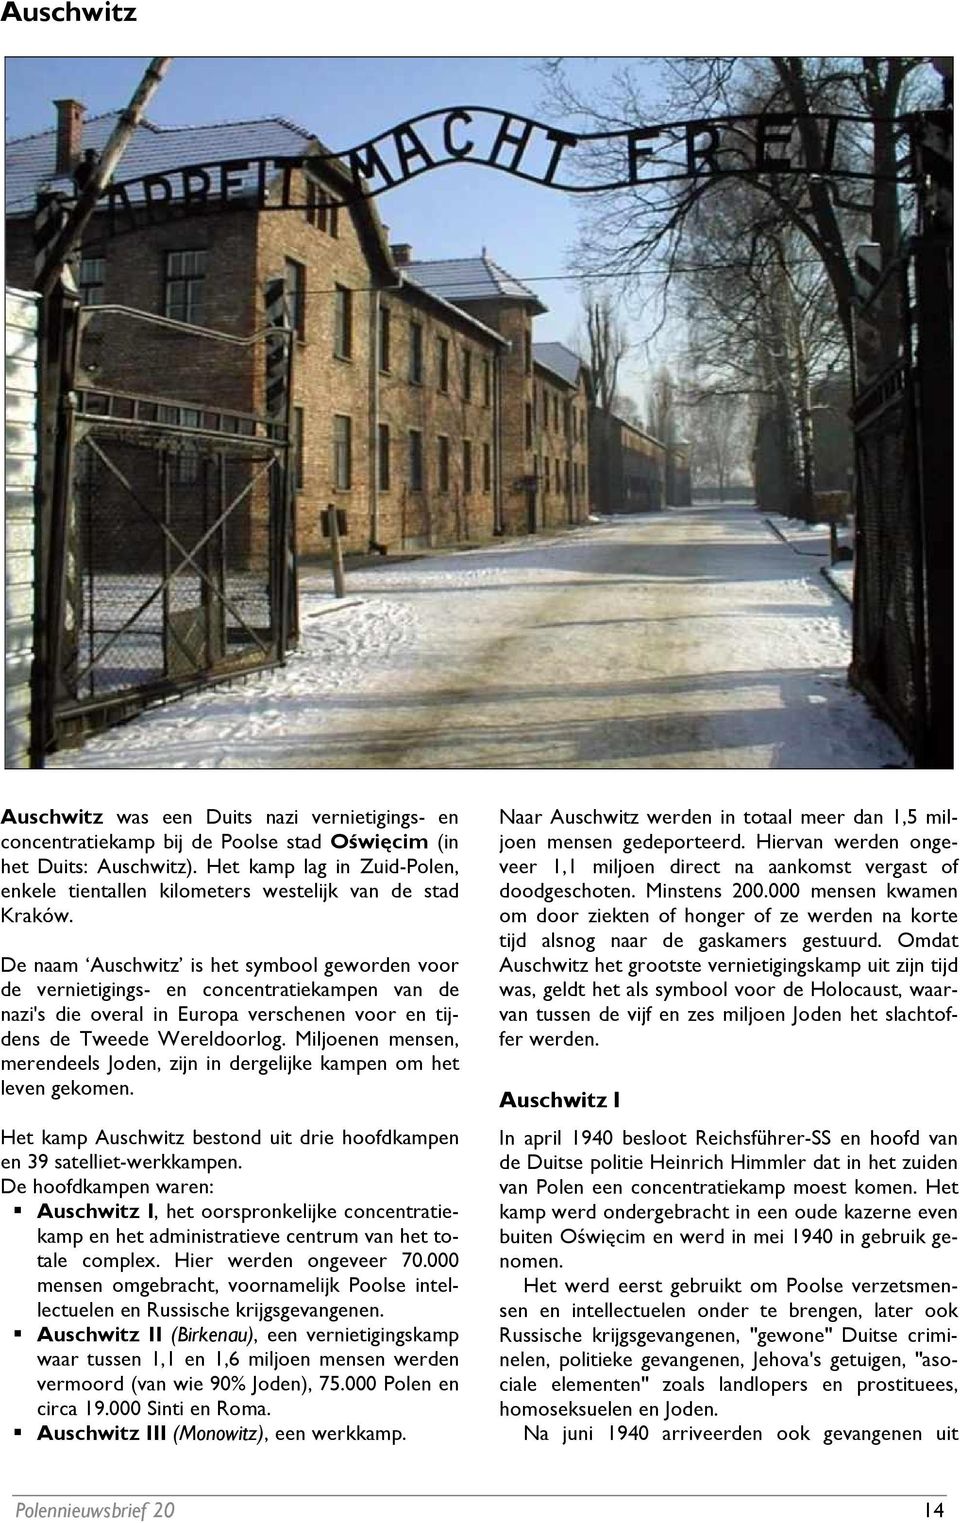 De naam Auschwitz is het symbool geworden voor de vernietigings- en concentratiekampen van de nazi's die overal in Europa verschenen voor en tijdens de Tweede Wereldoorlog.